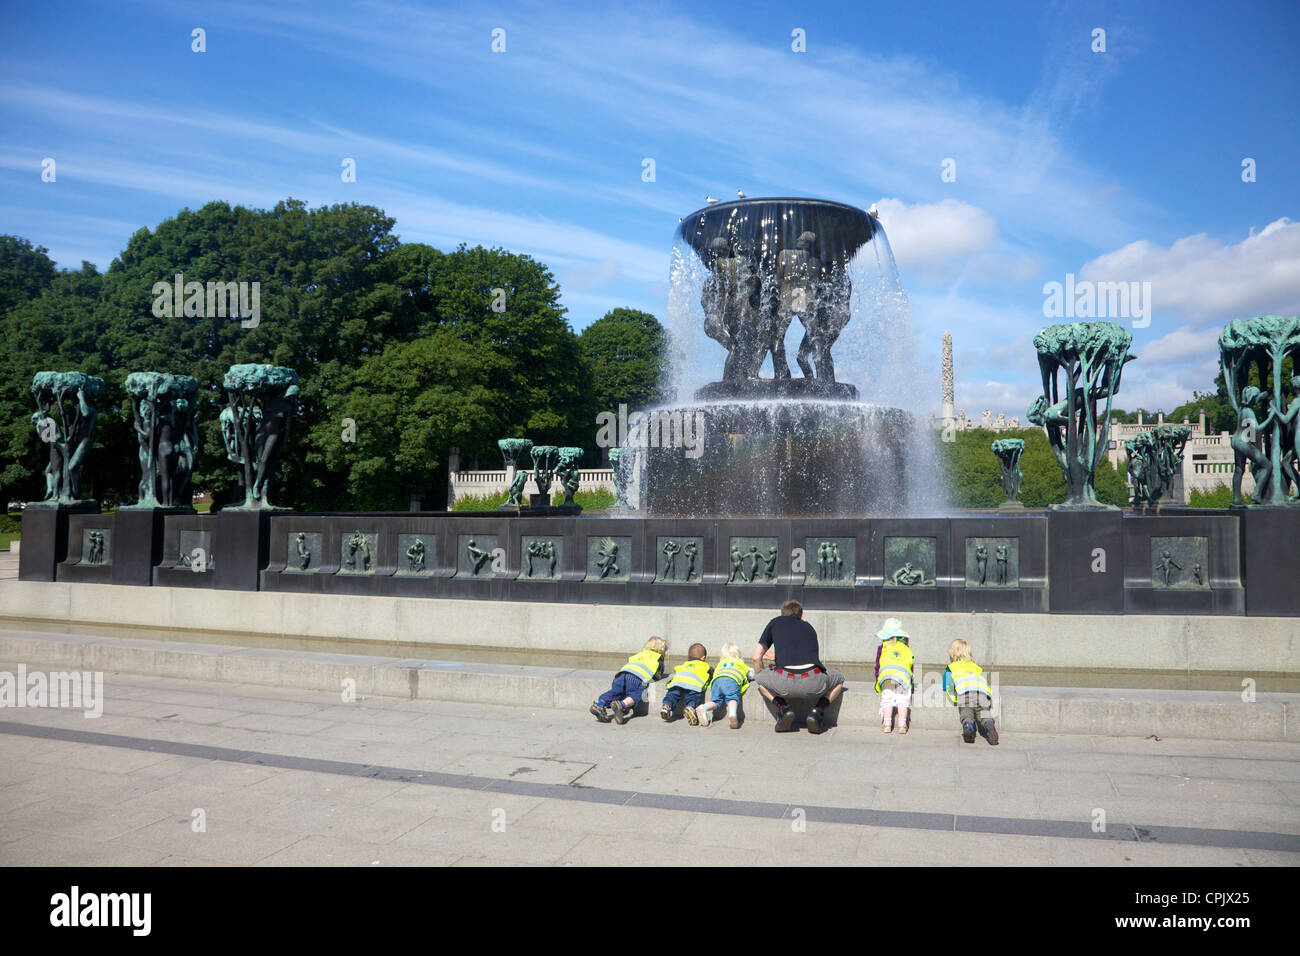 Fuente con grupos de árboles, por Gustav Vigeland, esculturas en bronce en el Parque de Esculturas Vigeland, Frognerparken, Oslo, Noruega Foto de stock